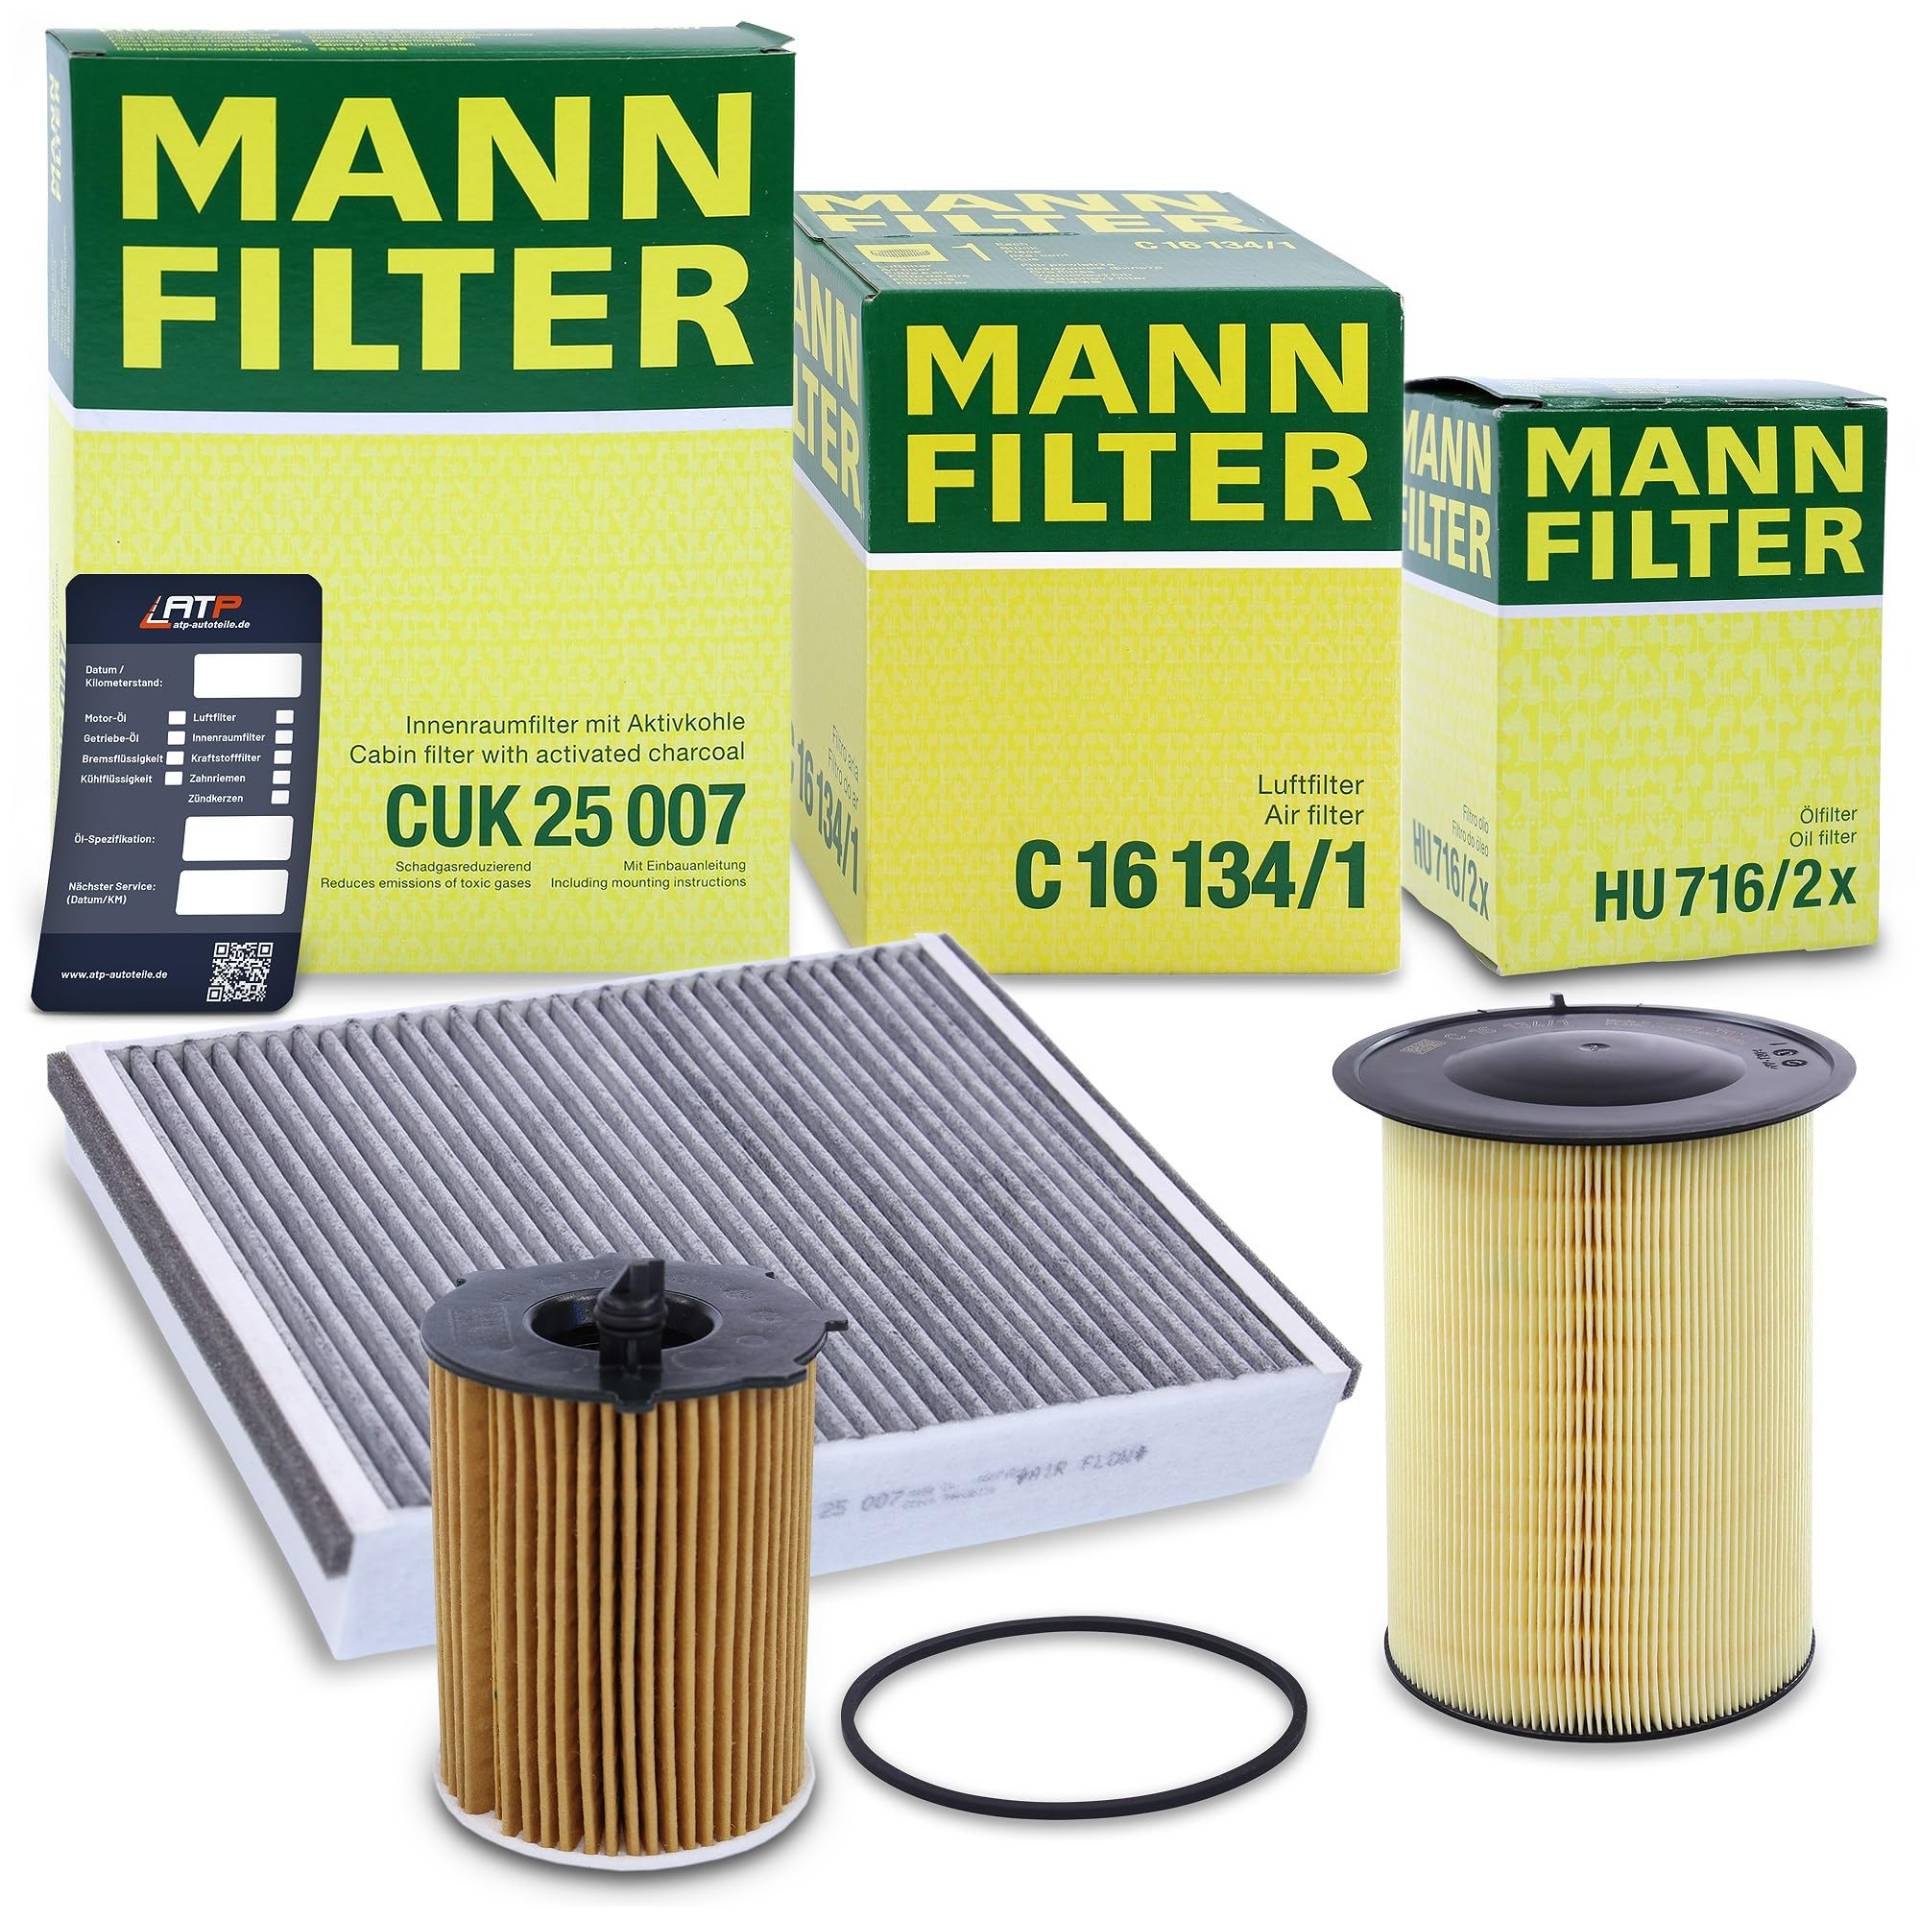 MANN-FILTER Filterset Inspektionspaket mit 1x MANN-FILTER Ölfilter, 1x MANN-FILTER Luftfilter, 1x MANN-FILTER Innenraumfilter, 1x Ölwechselanhänger, von Generisch